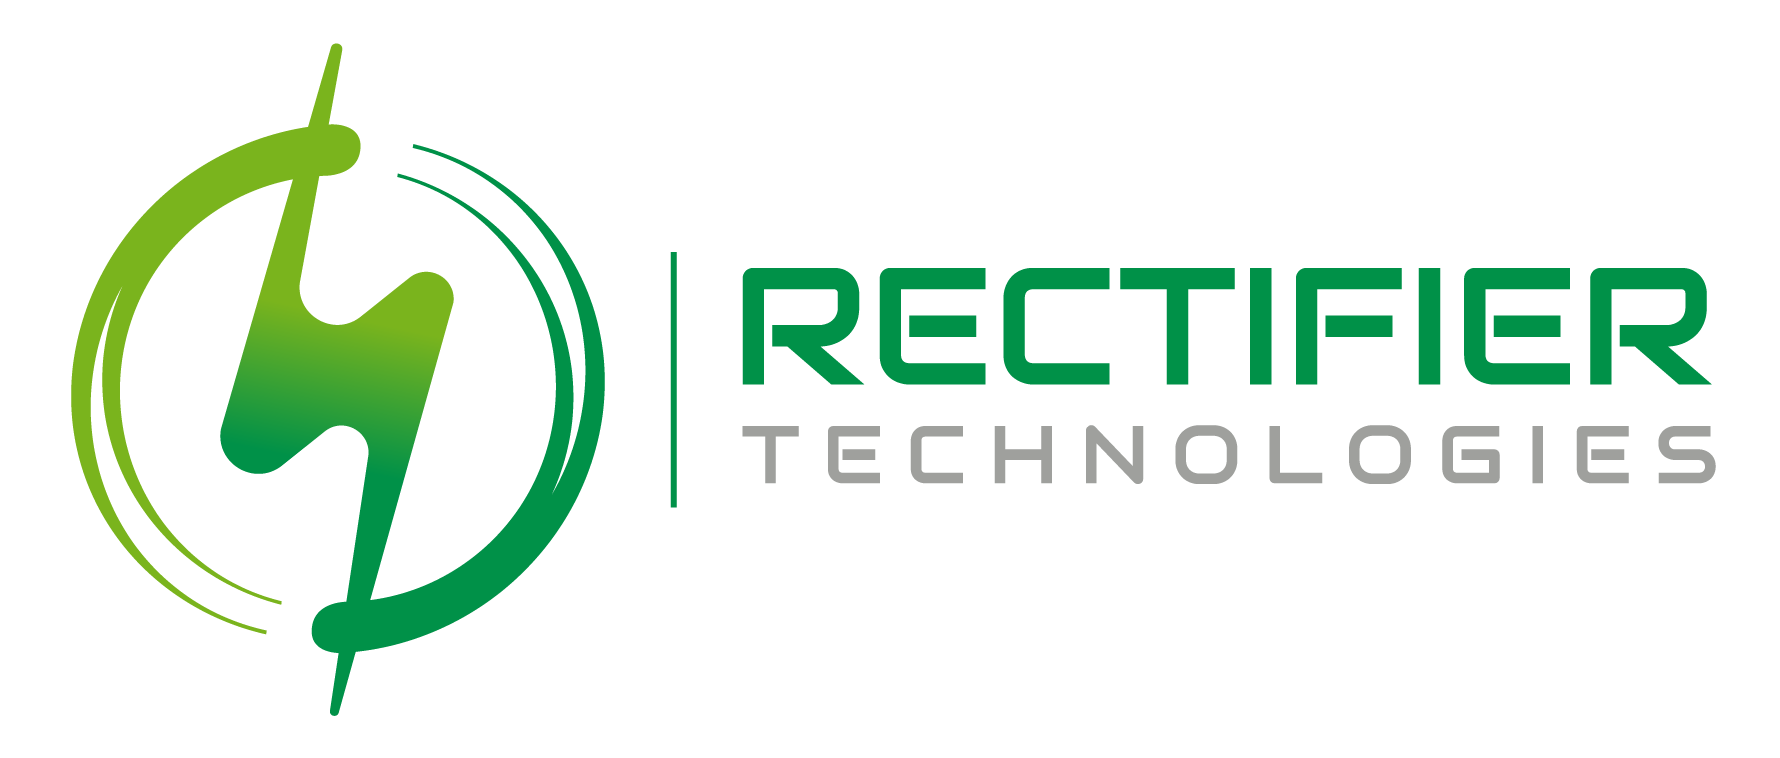 Rectifier Technologies